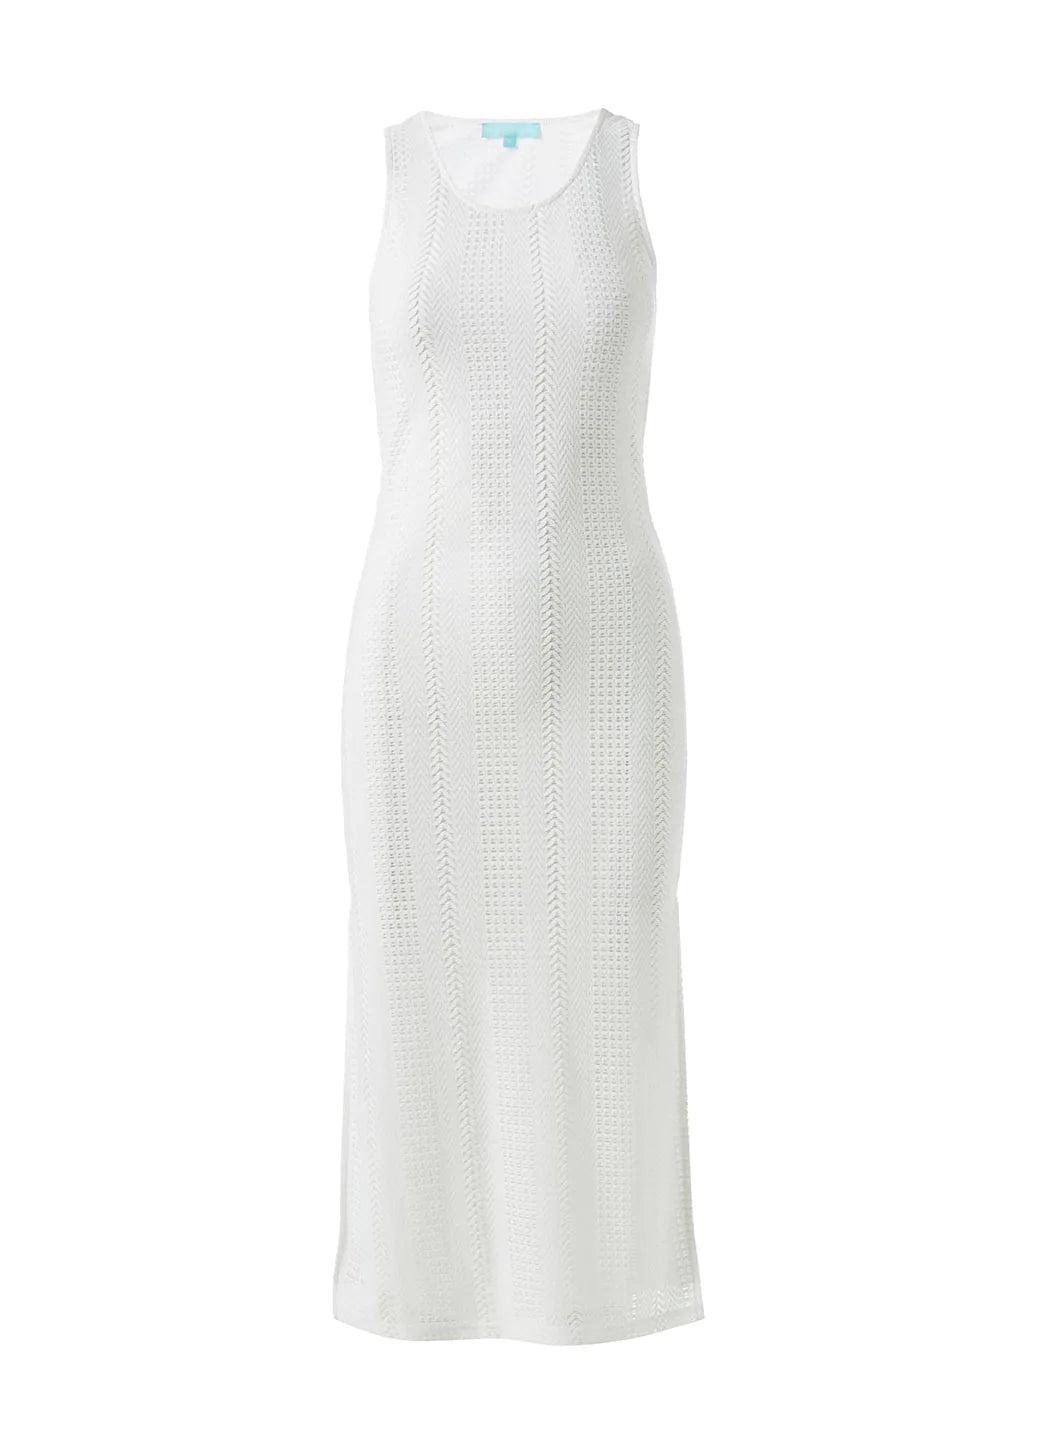 White Dress Neck Scooped | Odabash Midi Hem Hailey Website Split Official Melissa